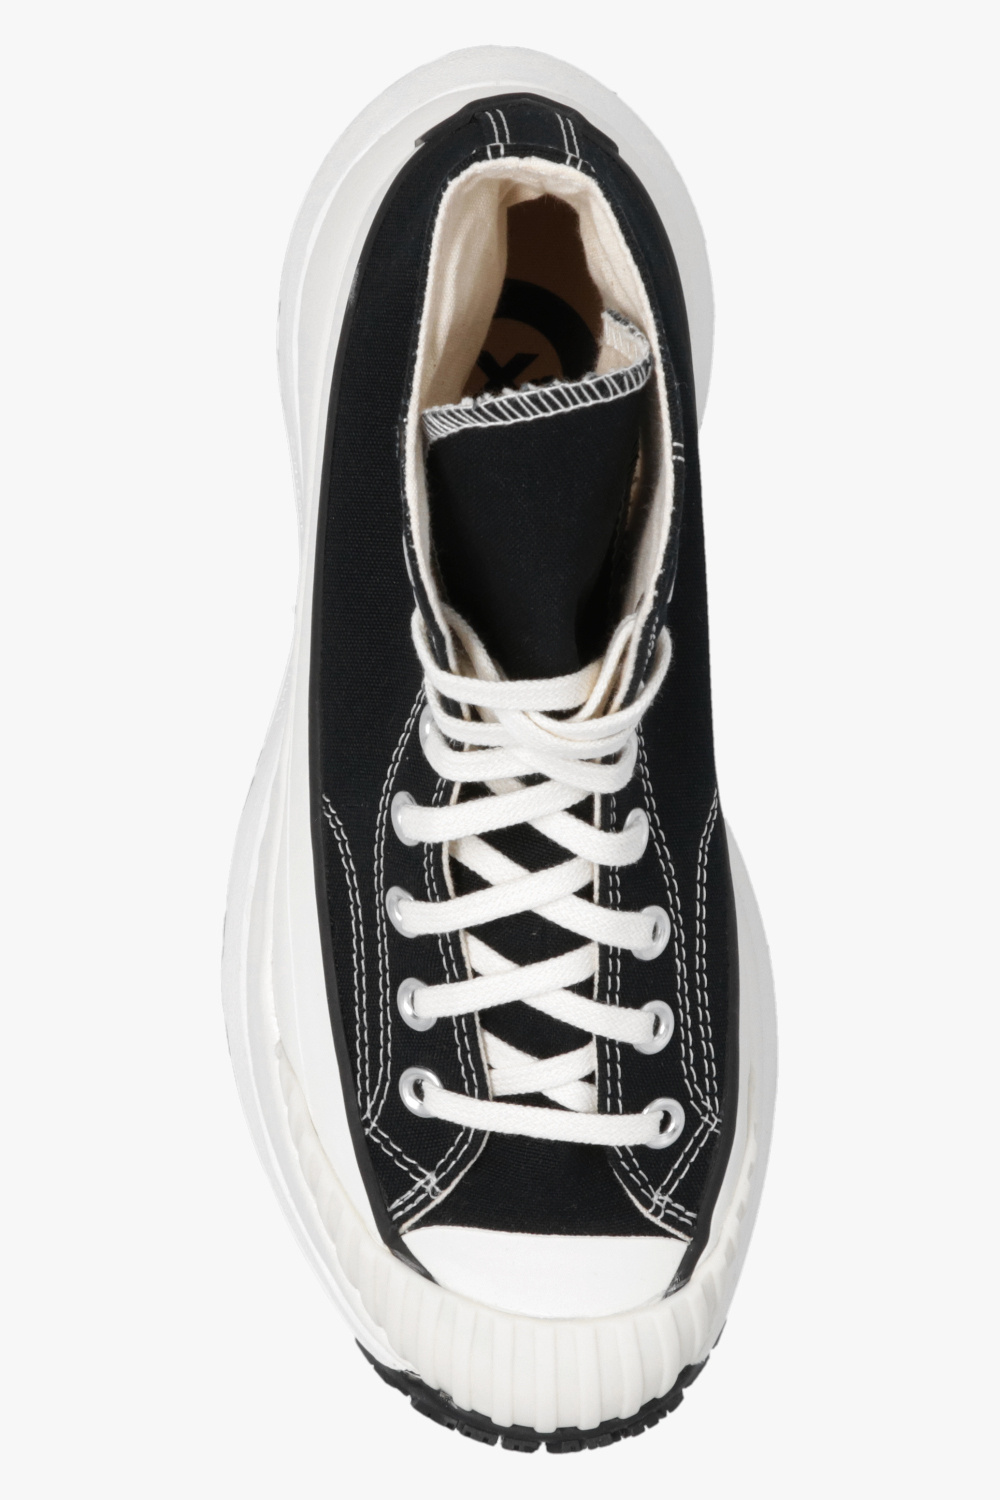 Louis vuitton converse shoes size 37.5 uk size 5